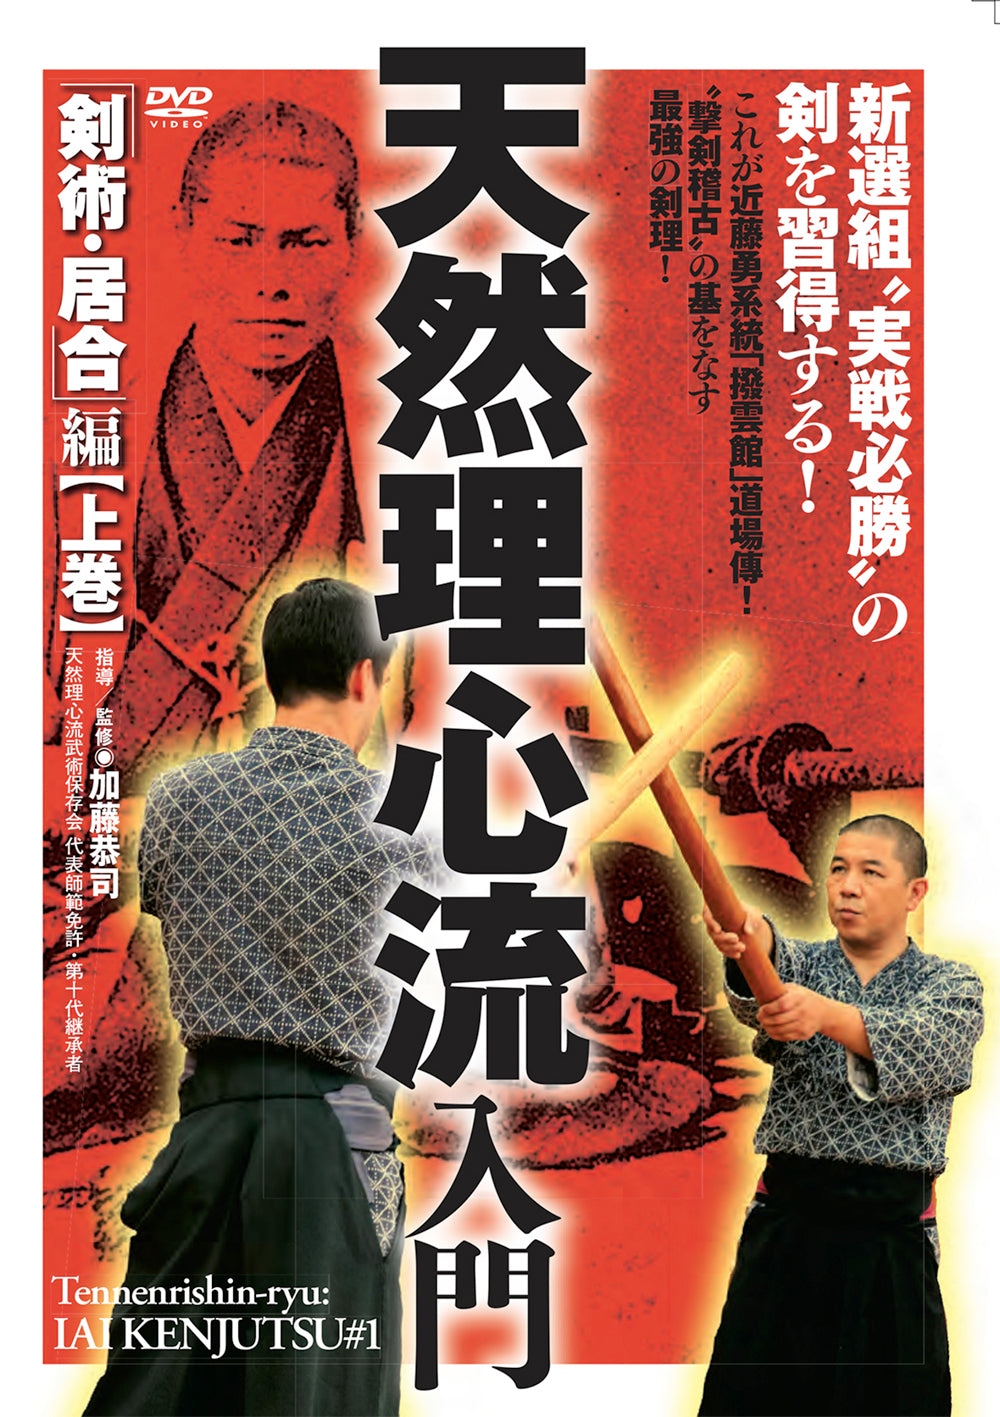 Intro to Tennen Rishin Ryu Vol 1: Iaikenjutsu DVD by Kyoji Kato - Budovideos